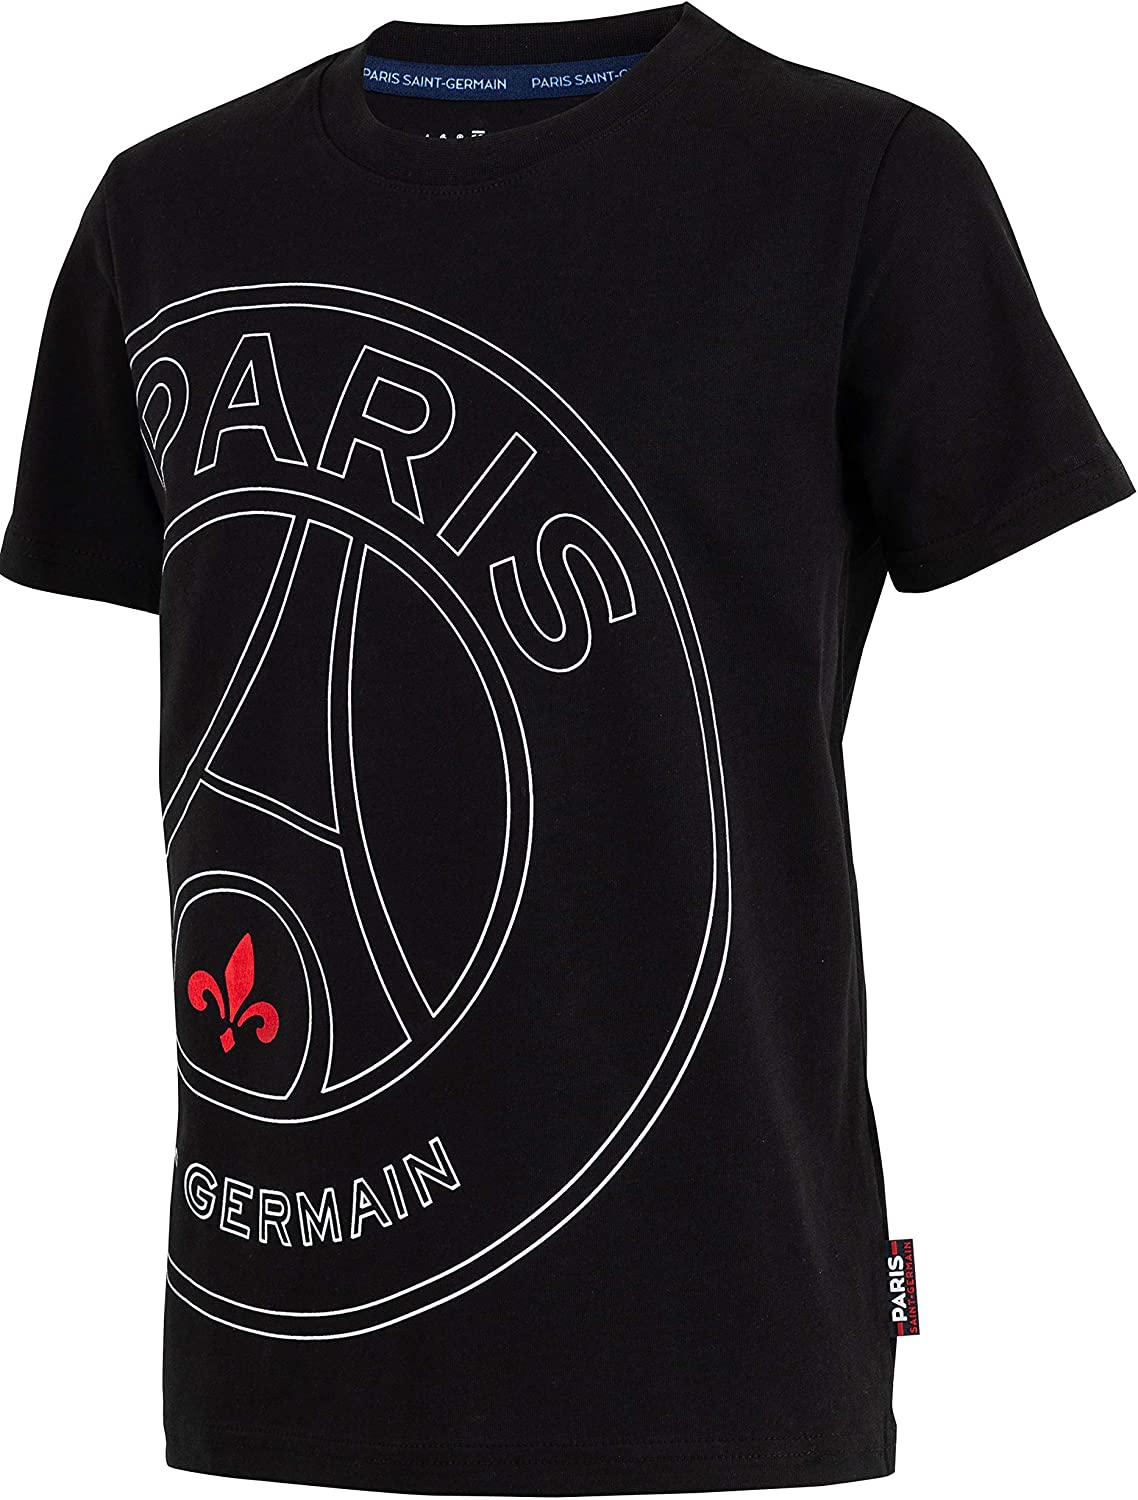 Paris Saint Germain - PSG tričko čierne detské - SKLADOM